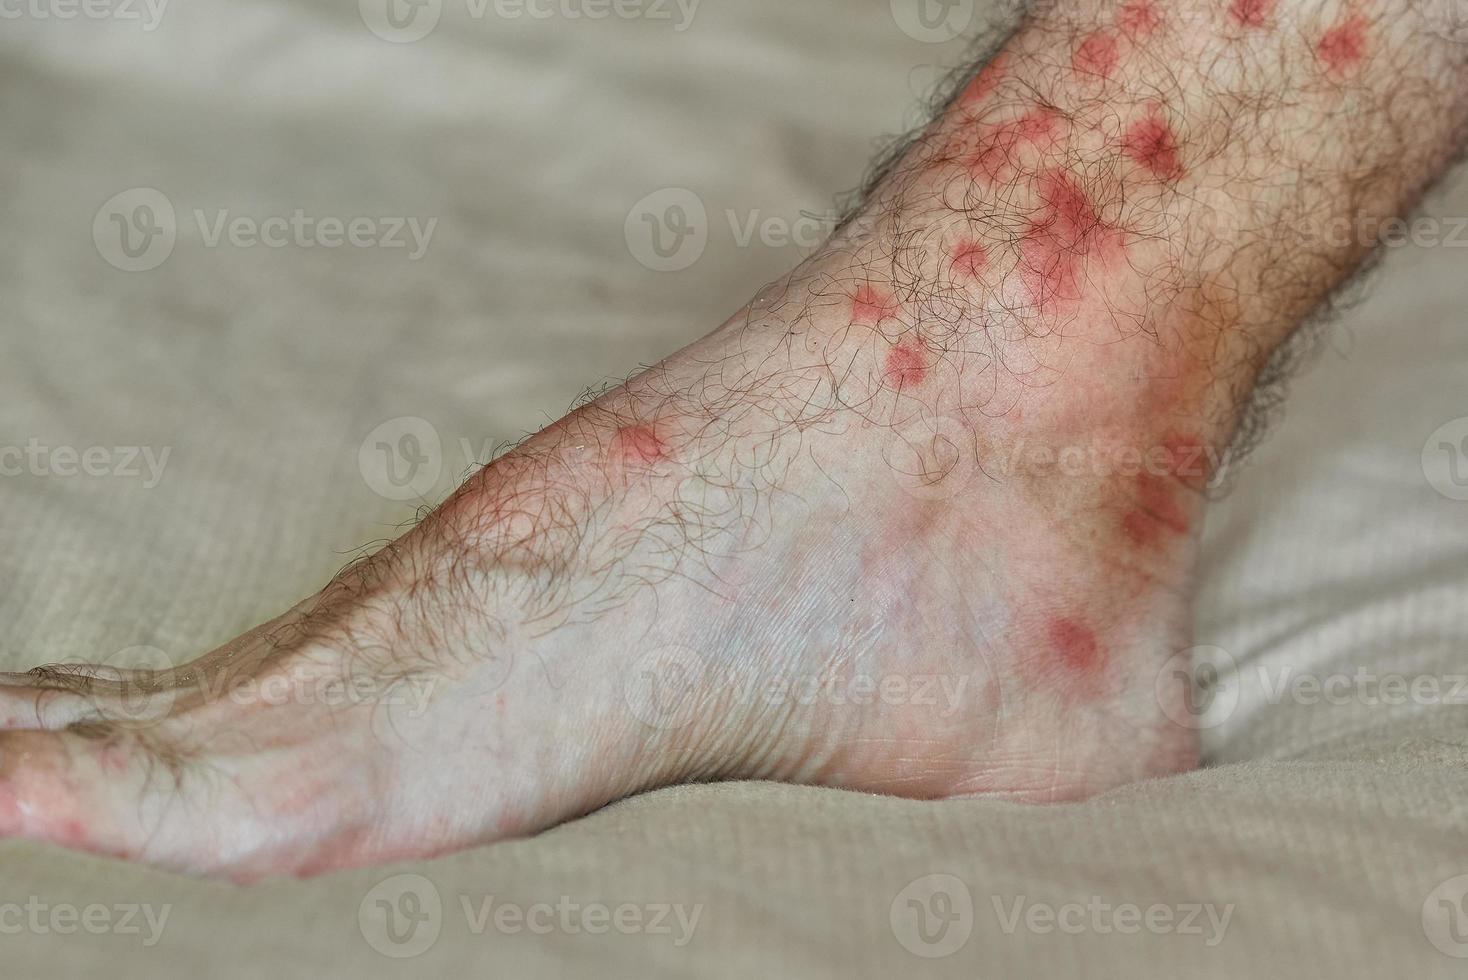 manchas rojas en la piel. pierna masculina con muchas manchas rojas y cicatriz por picadura de insecto. foto